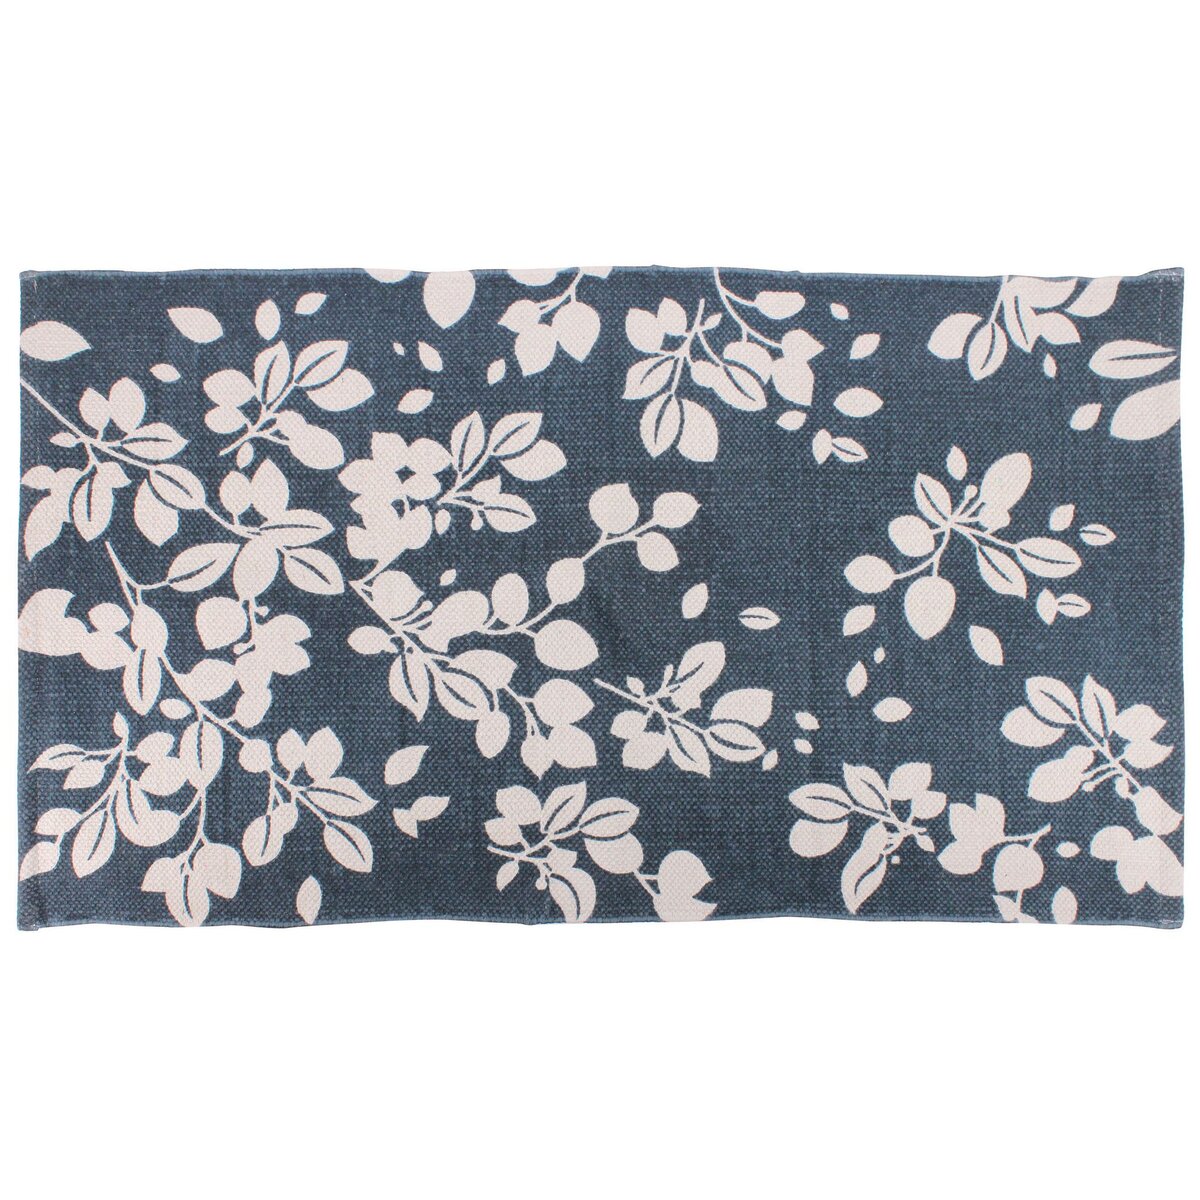 Tapis lirette fantaisie forme rectangle en coton motif art floral CLELIA